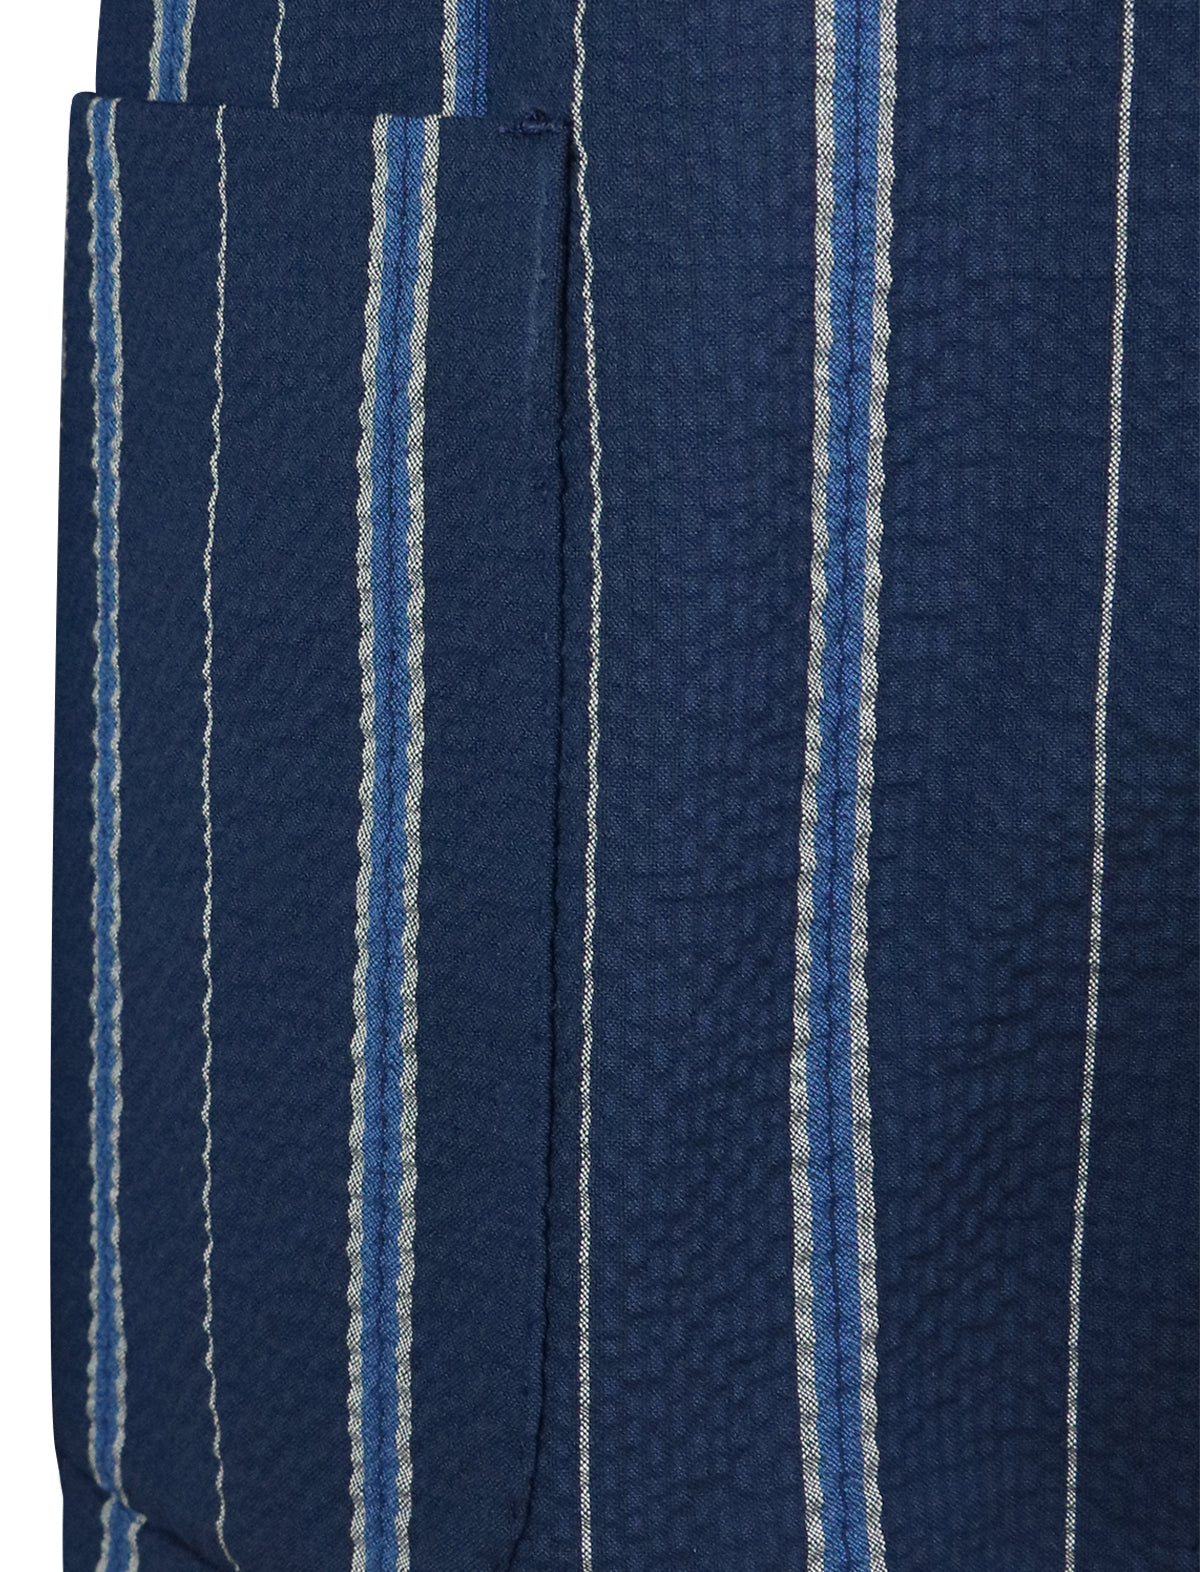 GABRIELE PASINI 2-Piece Suit in Navy Blue Stripes